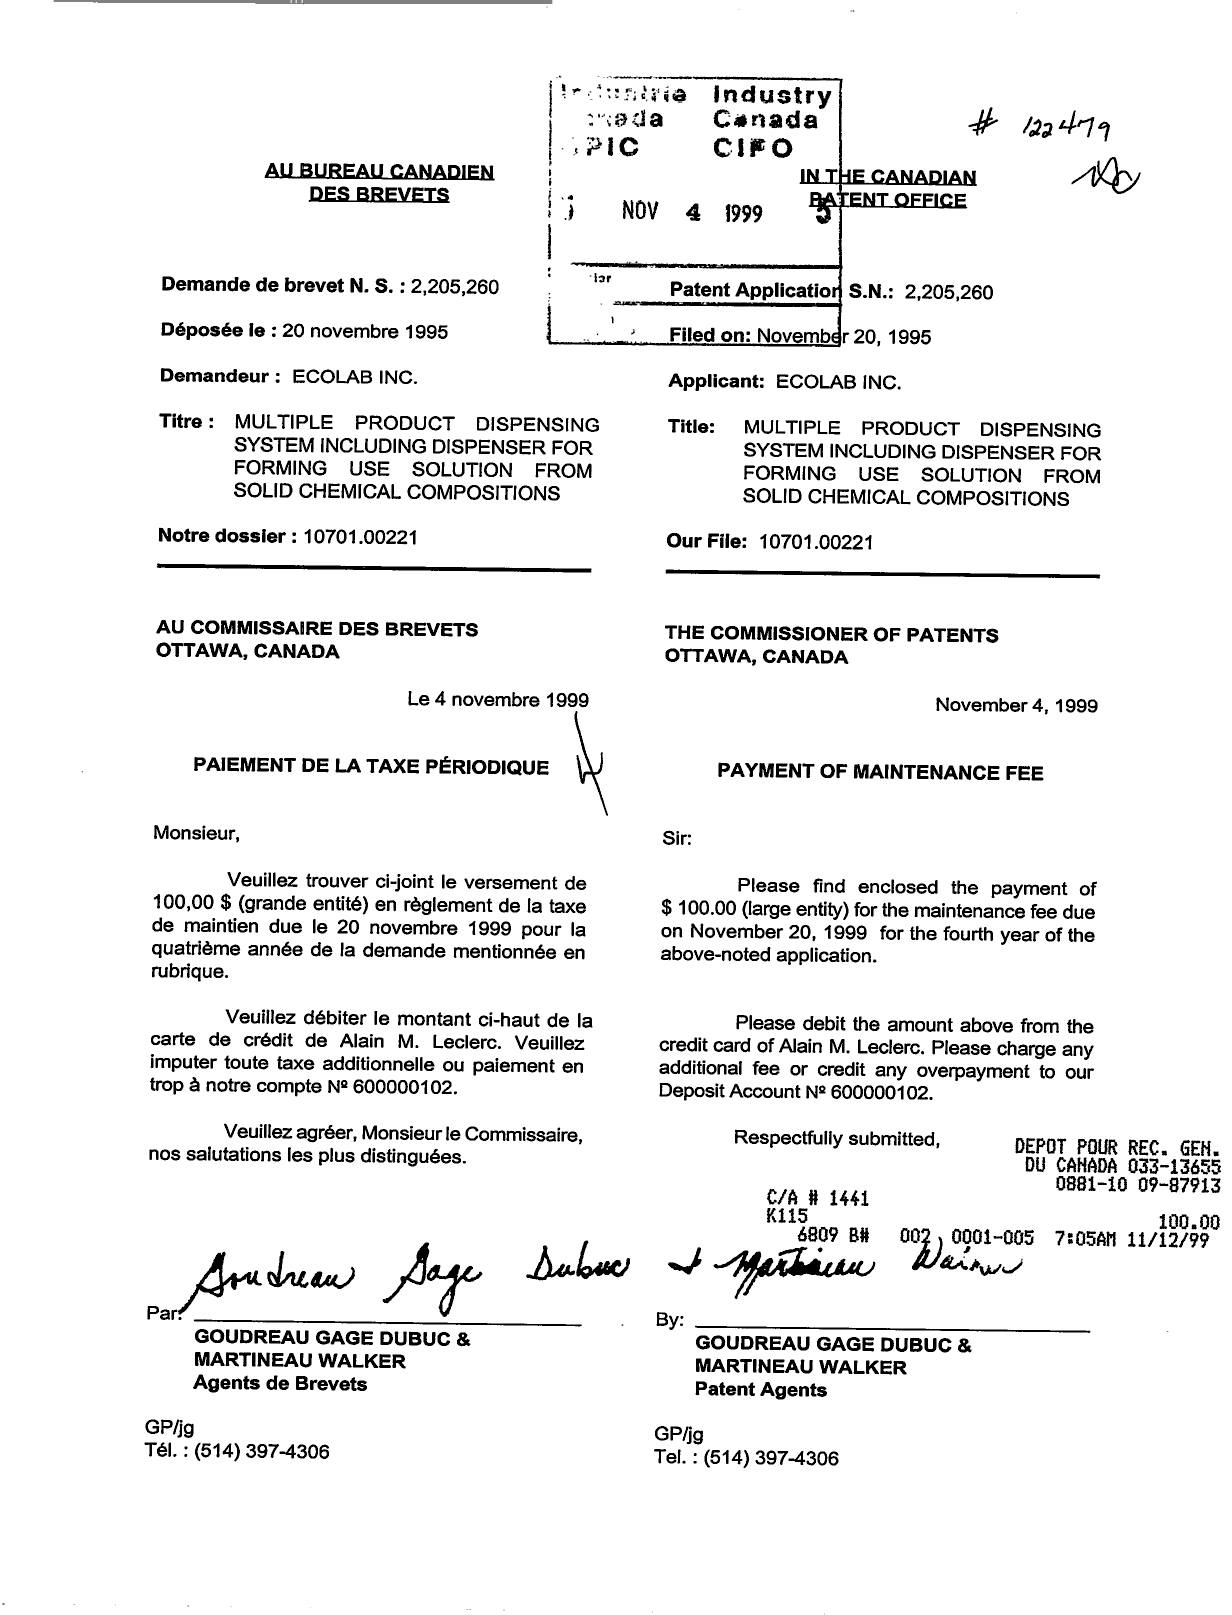 Document de brevet canadien 2205260. Taxes 19991104. Image 1 de 1